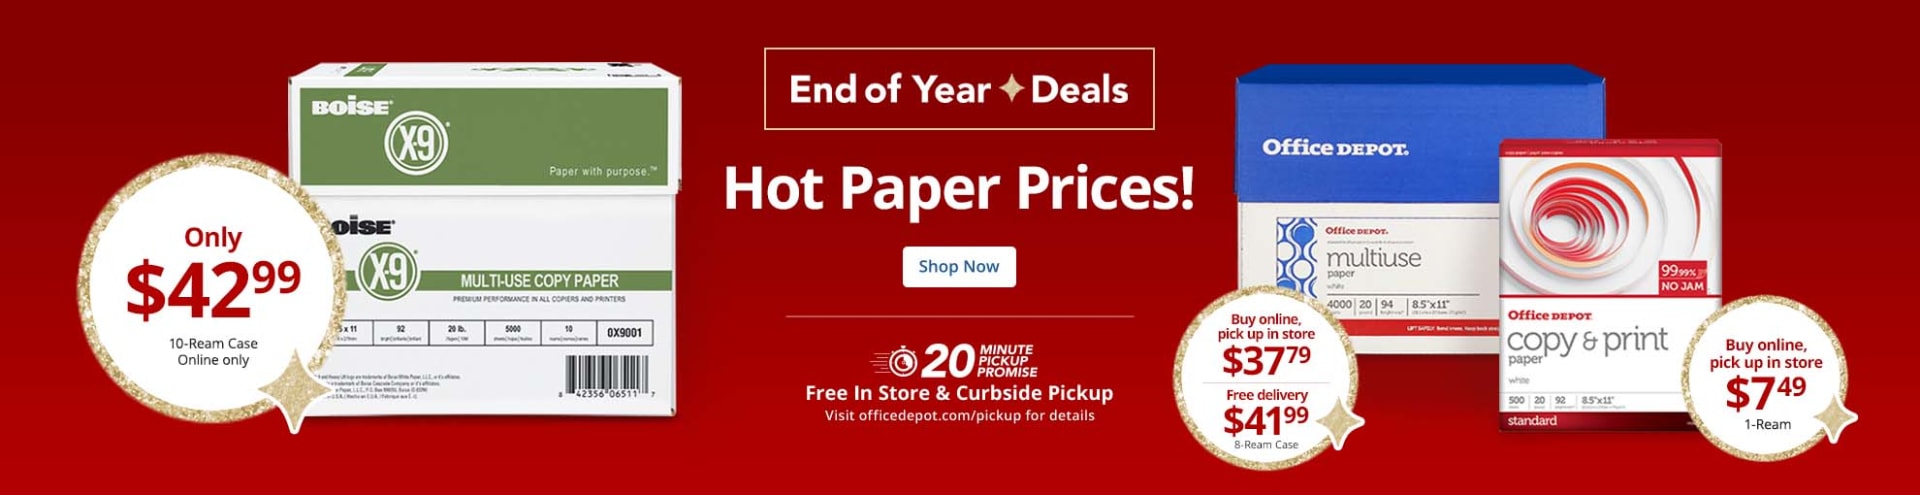 Hot Paper Deals!